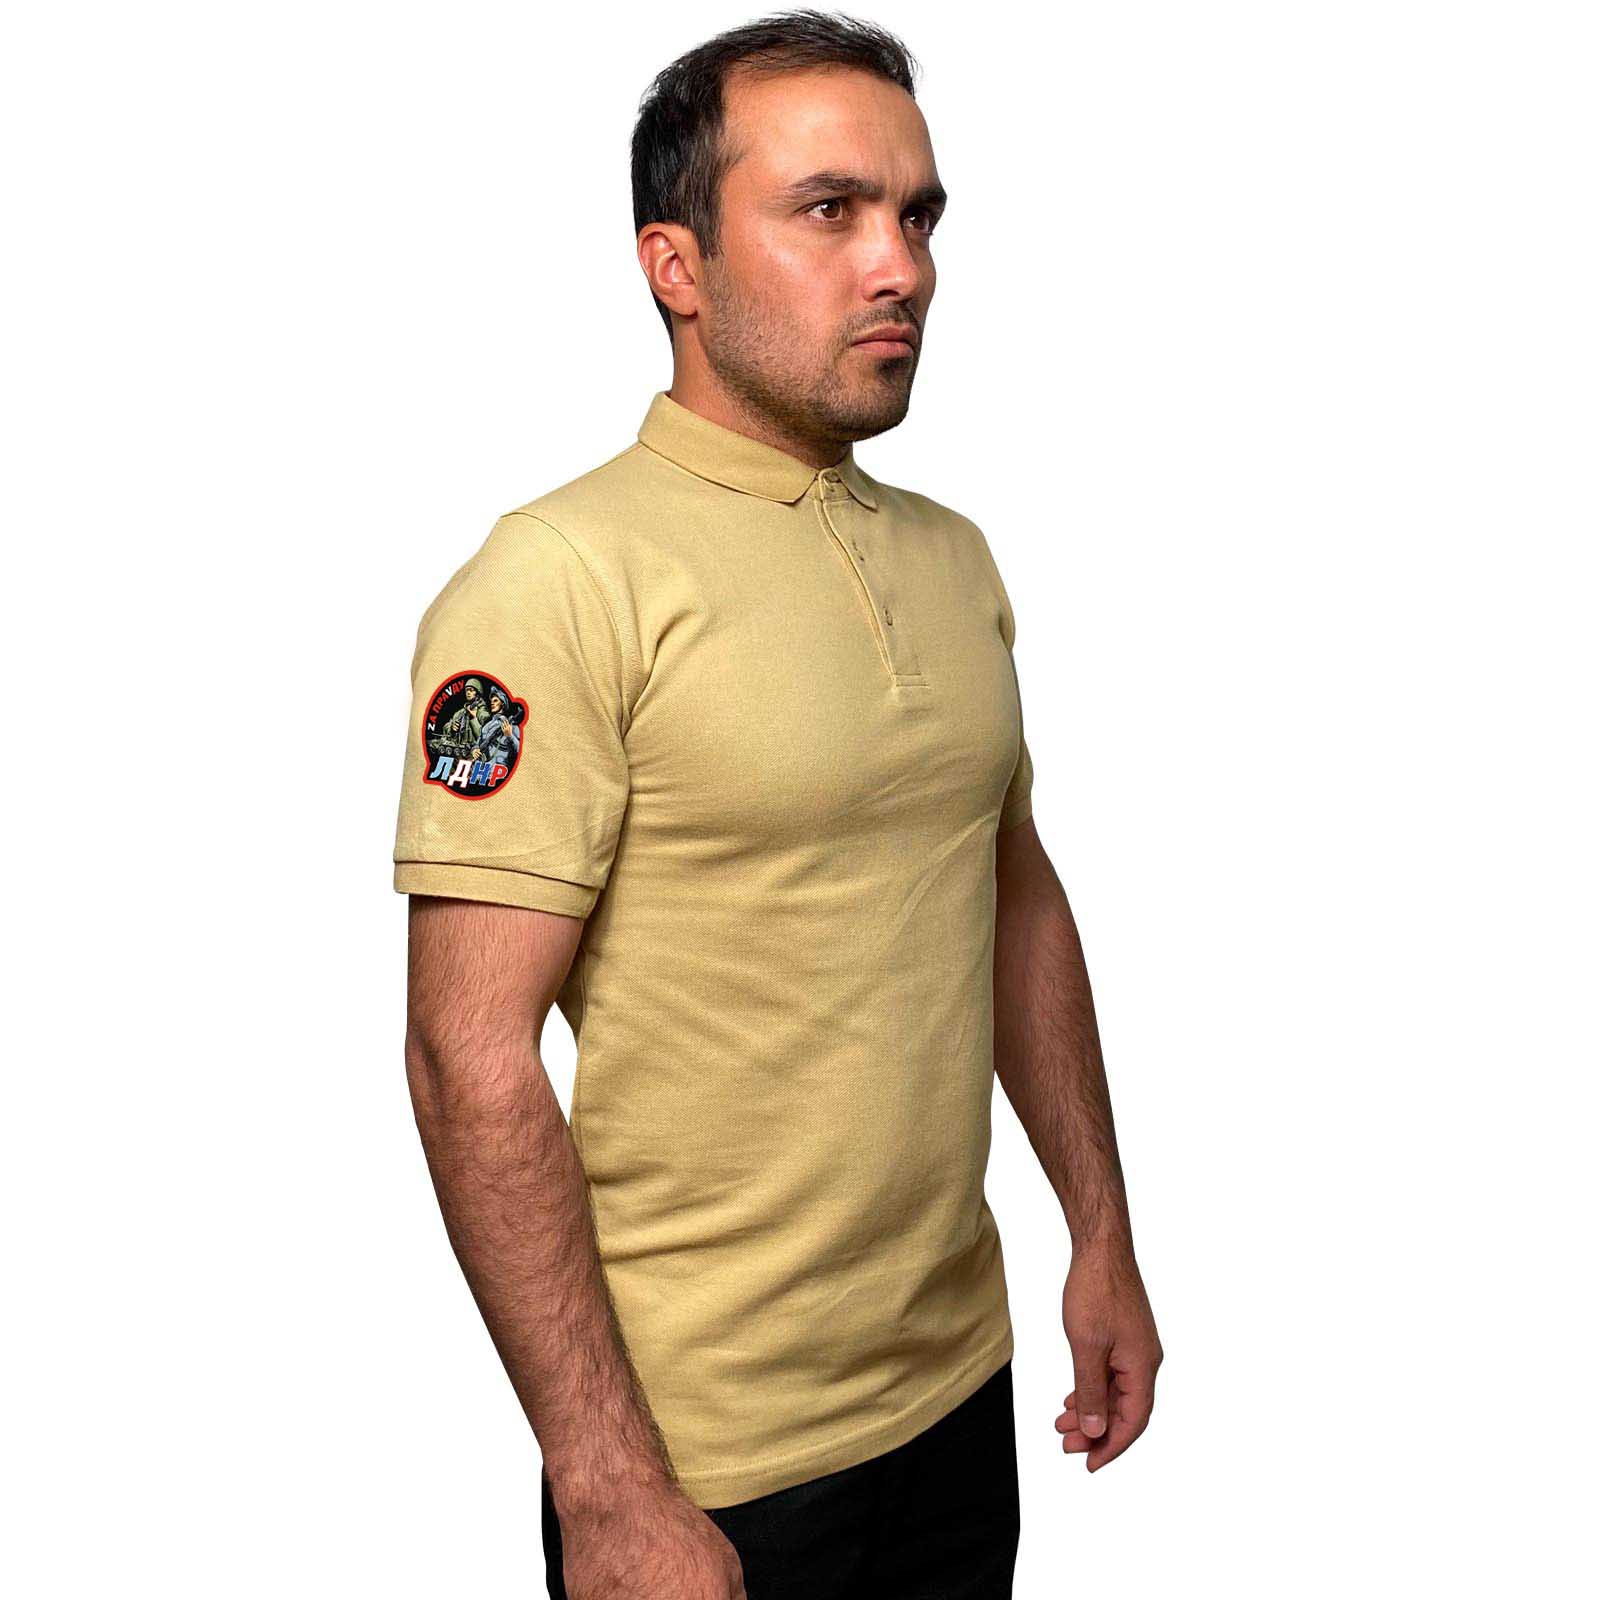 Купить надежную мужскую футболку-поло ЛДНР Zа ПраVду онлайн